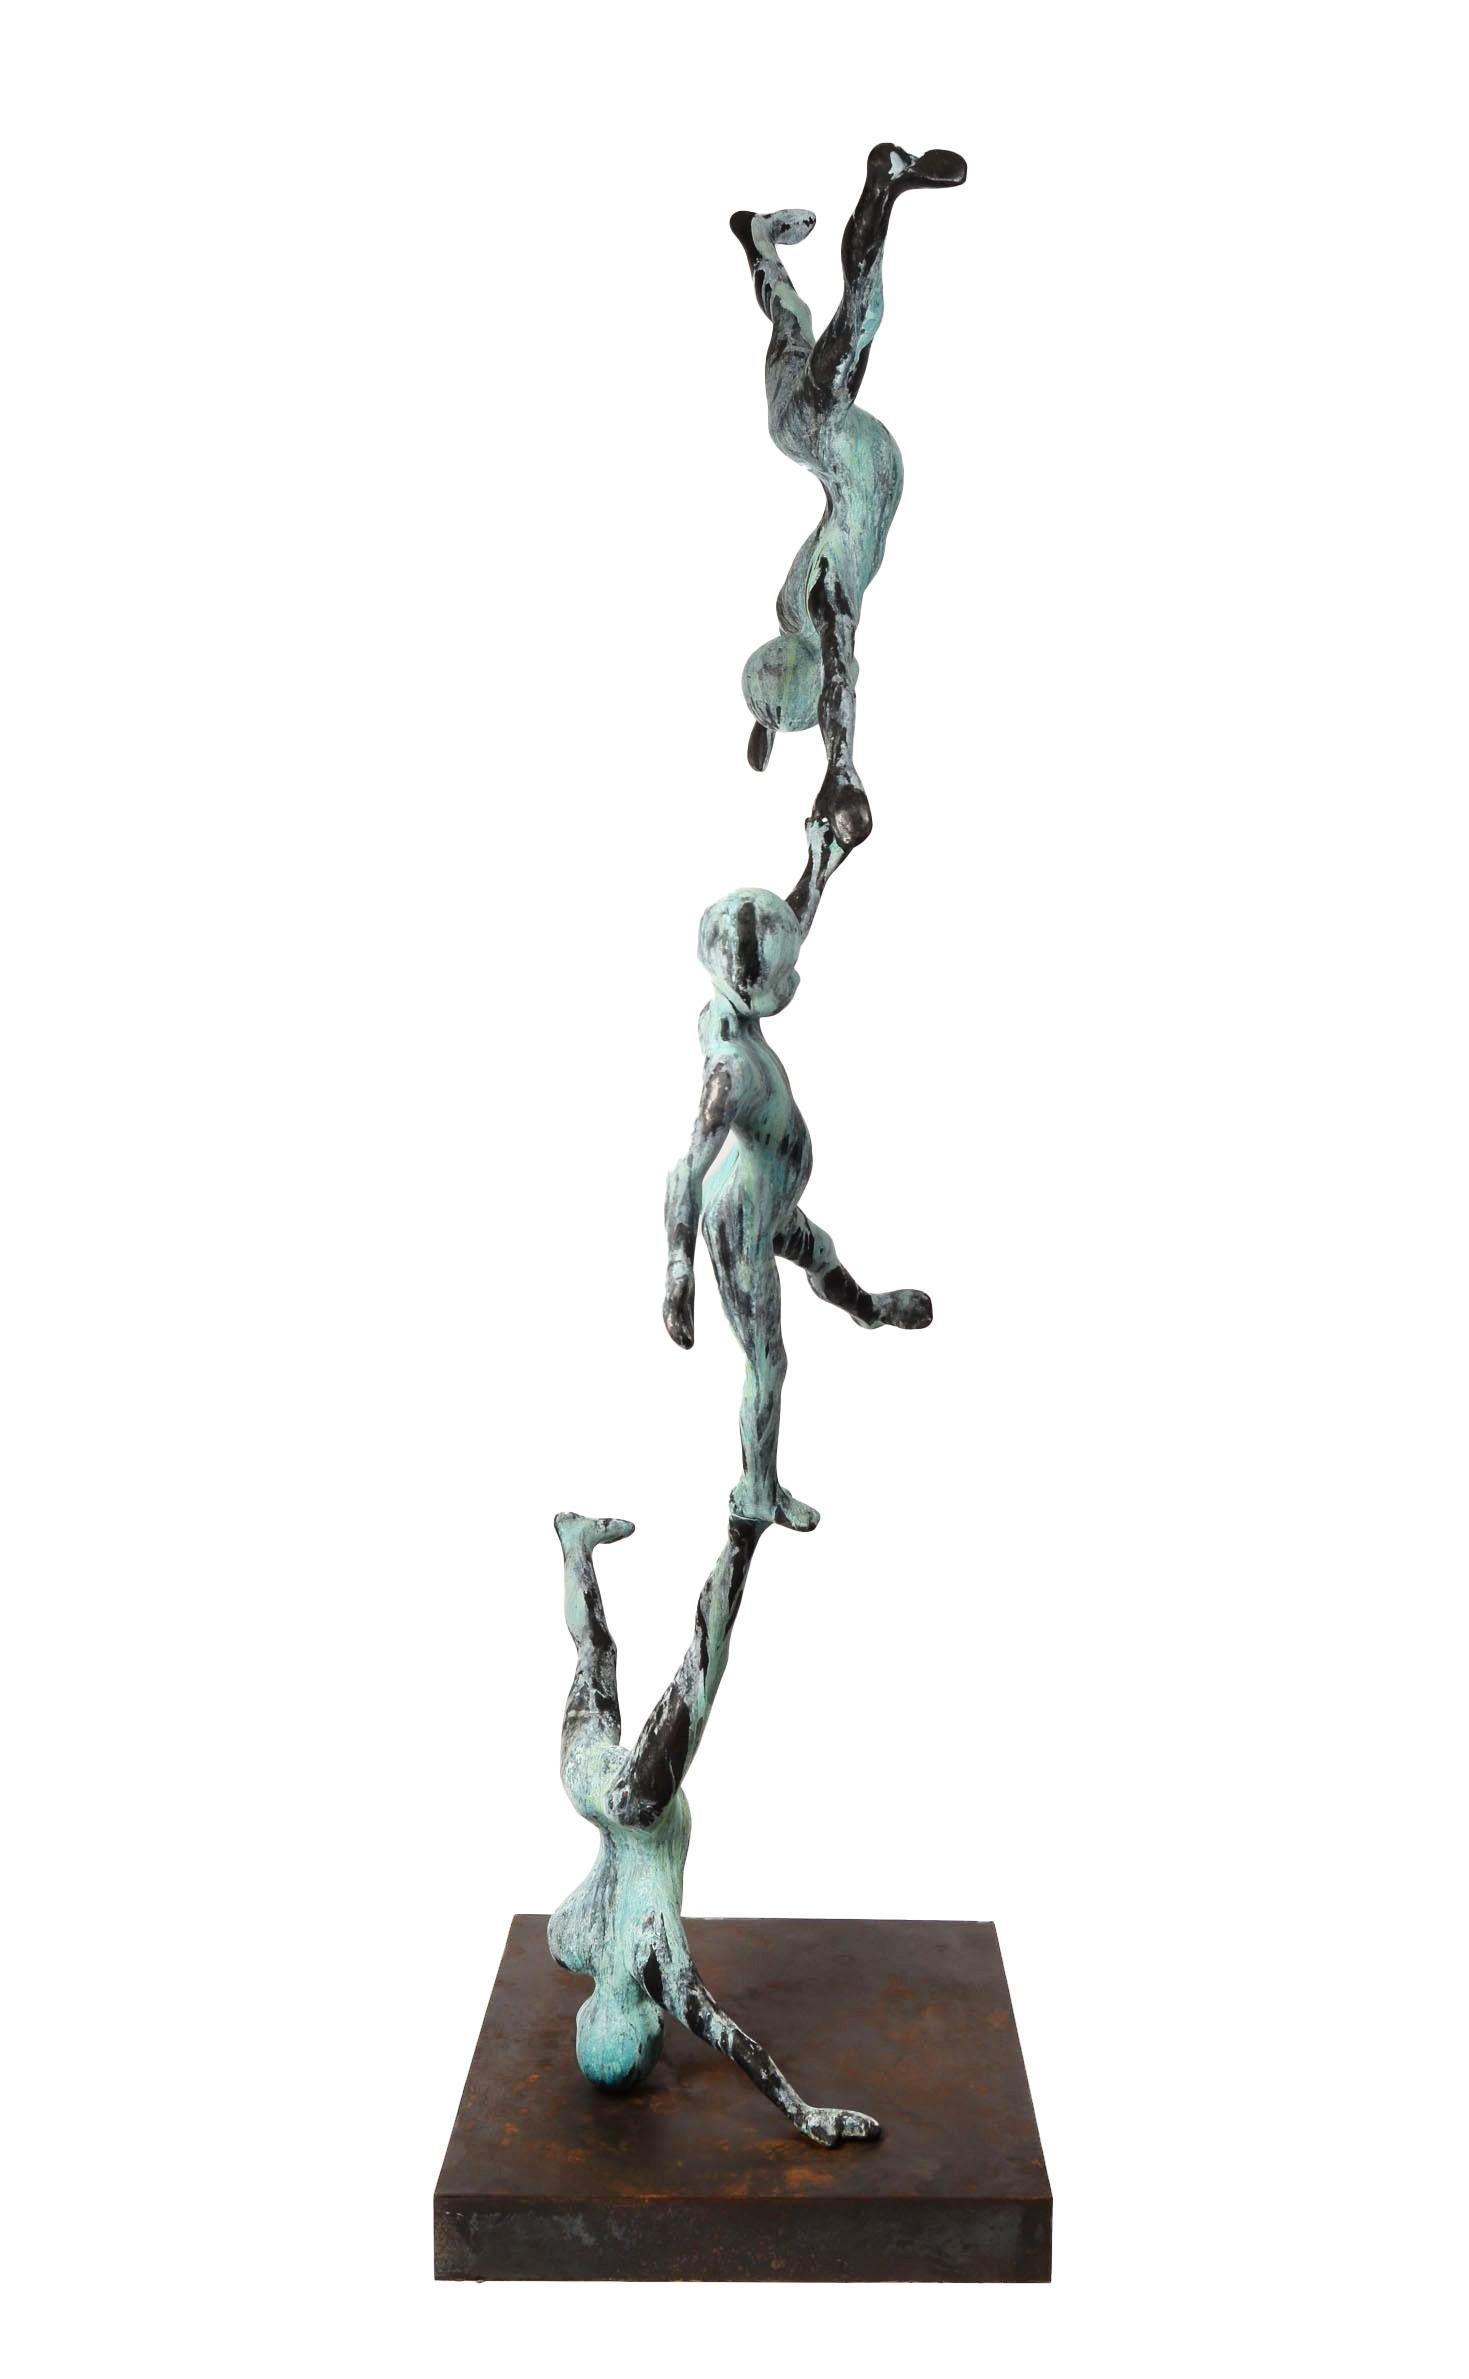 Diese monumentale Bronzeskulptur von Jesús Curiá zeigt drei jugendliche Akrobaten, die ein Kunststück an Koordination und Balance vollbringen.  Die Komposition der gestapelten Figuren wirkt verspielt und unschuldig.  Eine schöne Vert-de-Gris-Patina